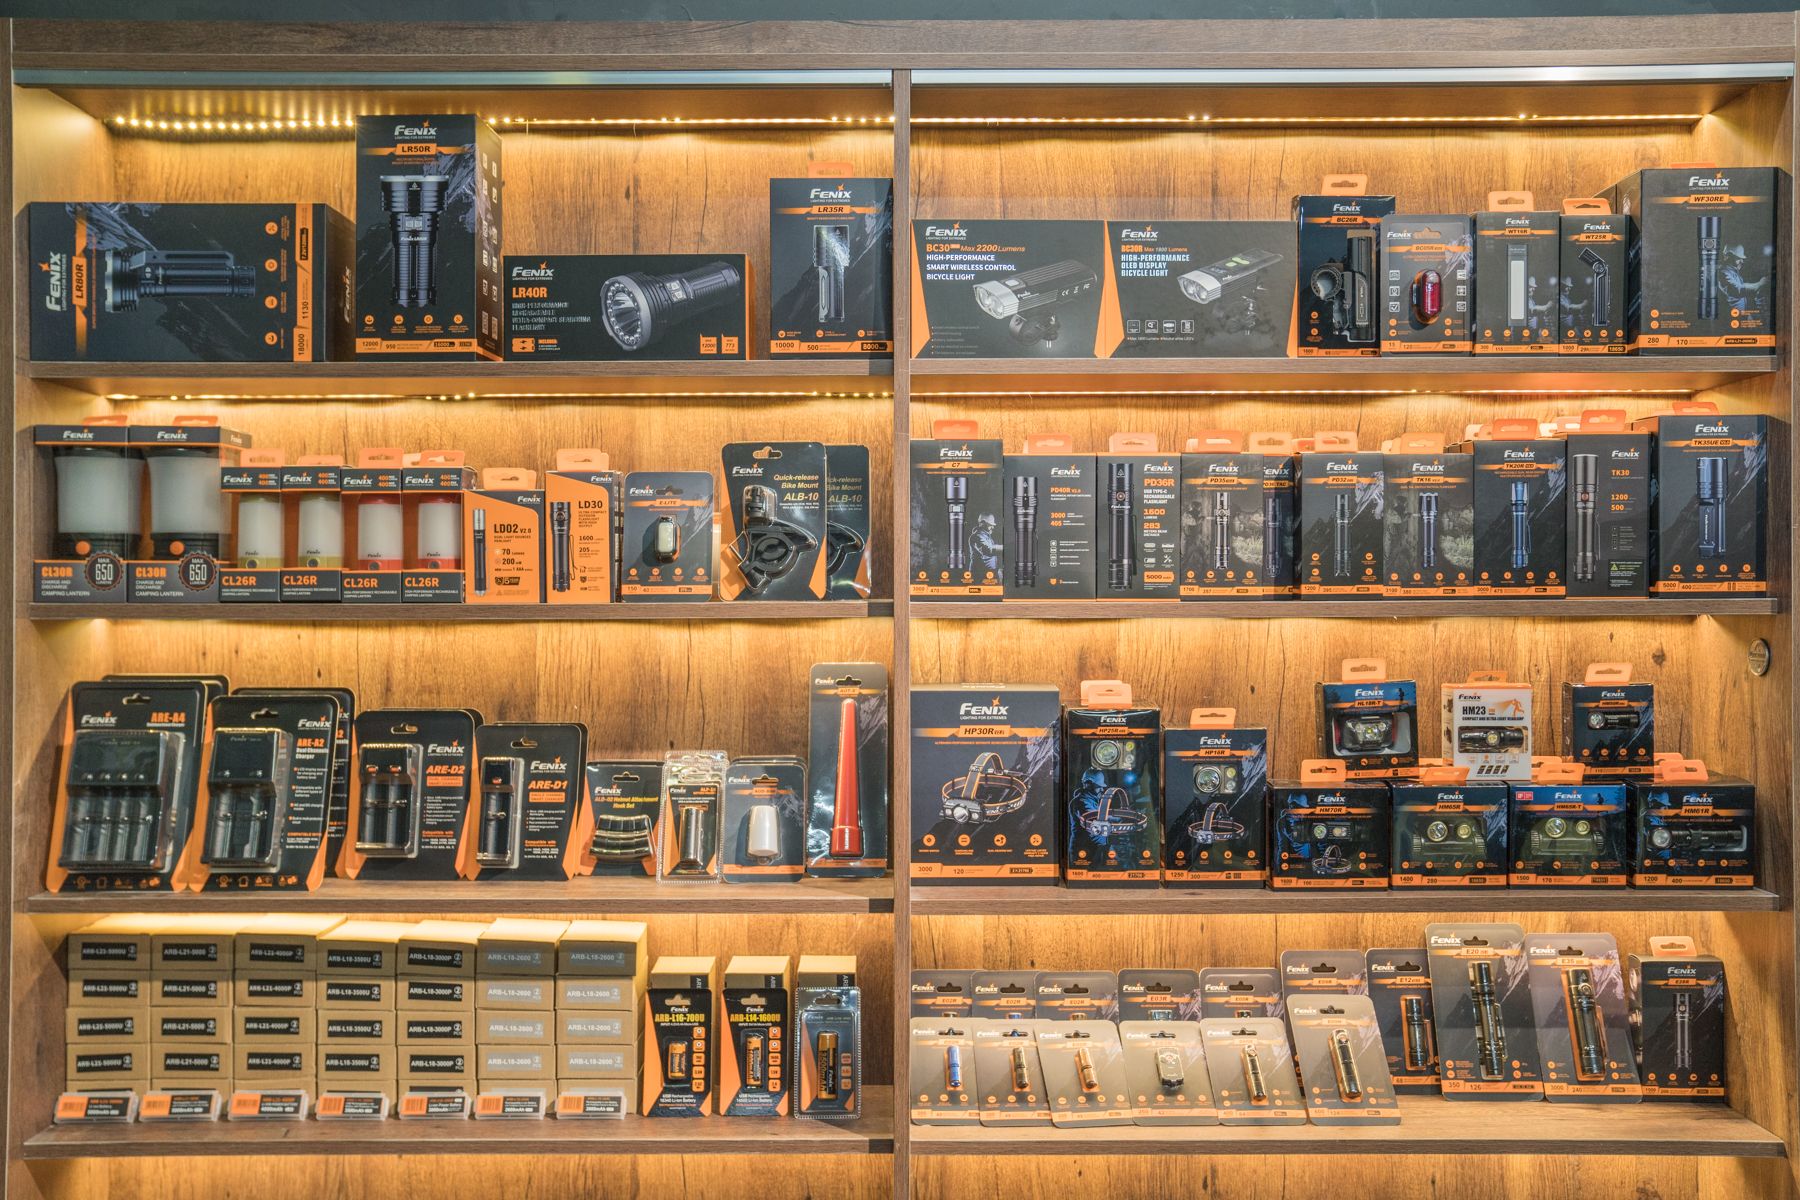 Chuyên Tactical là cửa hàng bán lẻ ở TP. Hồ Chí Minh chuyên nhập khẩu các sản phẩm đèn pin và nhiều dòng sản phẩm khác